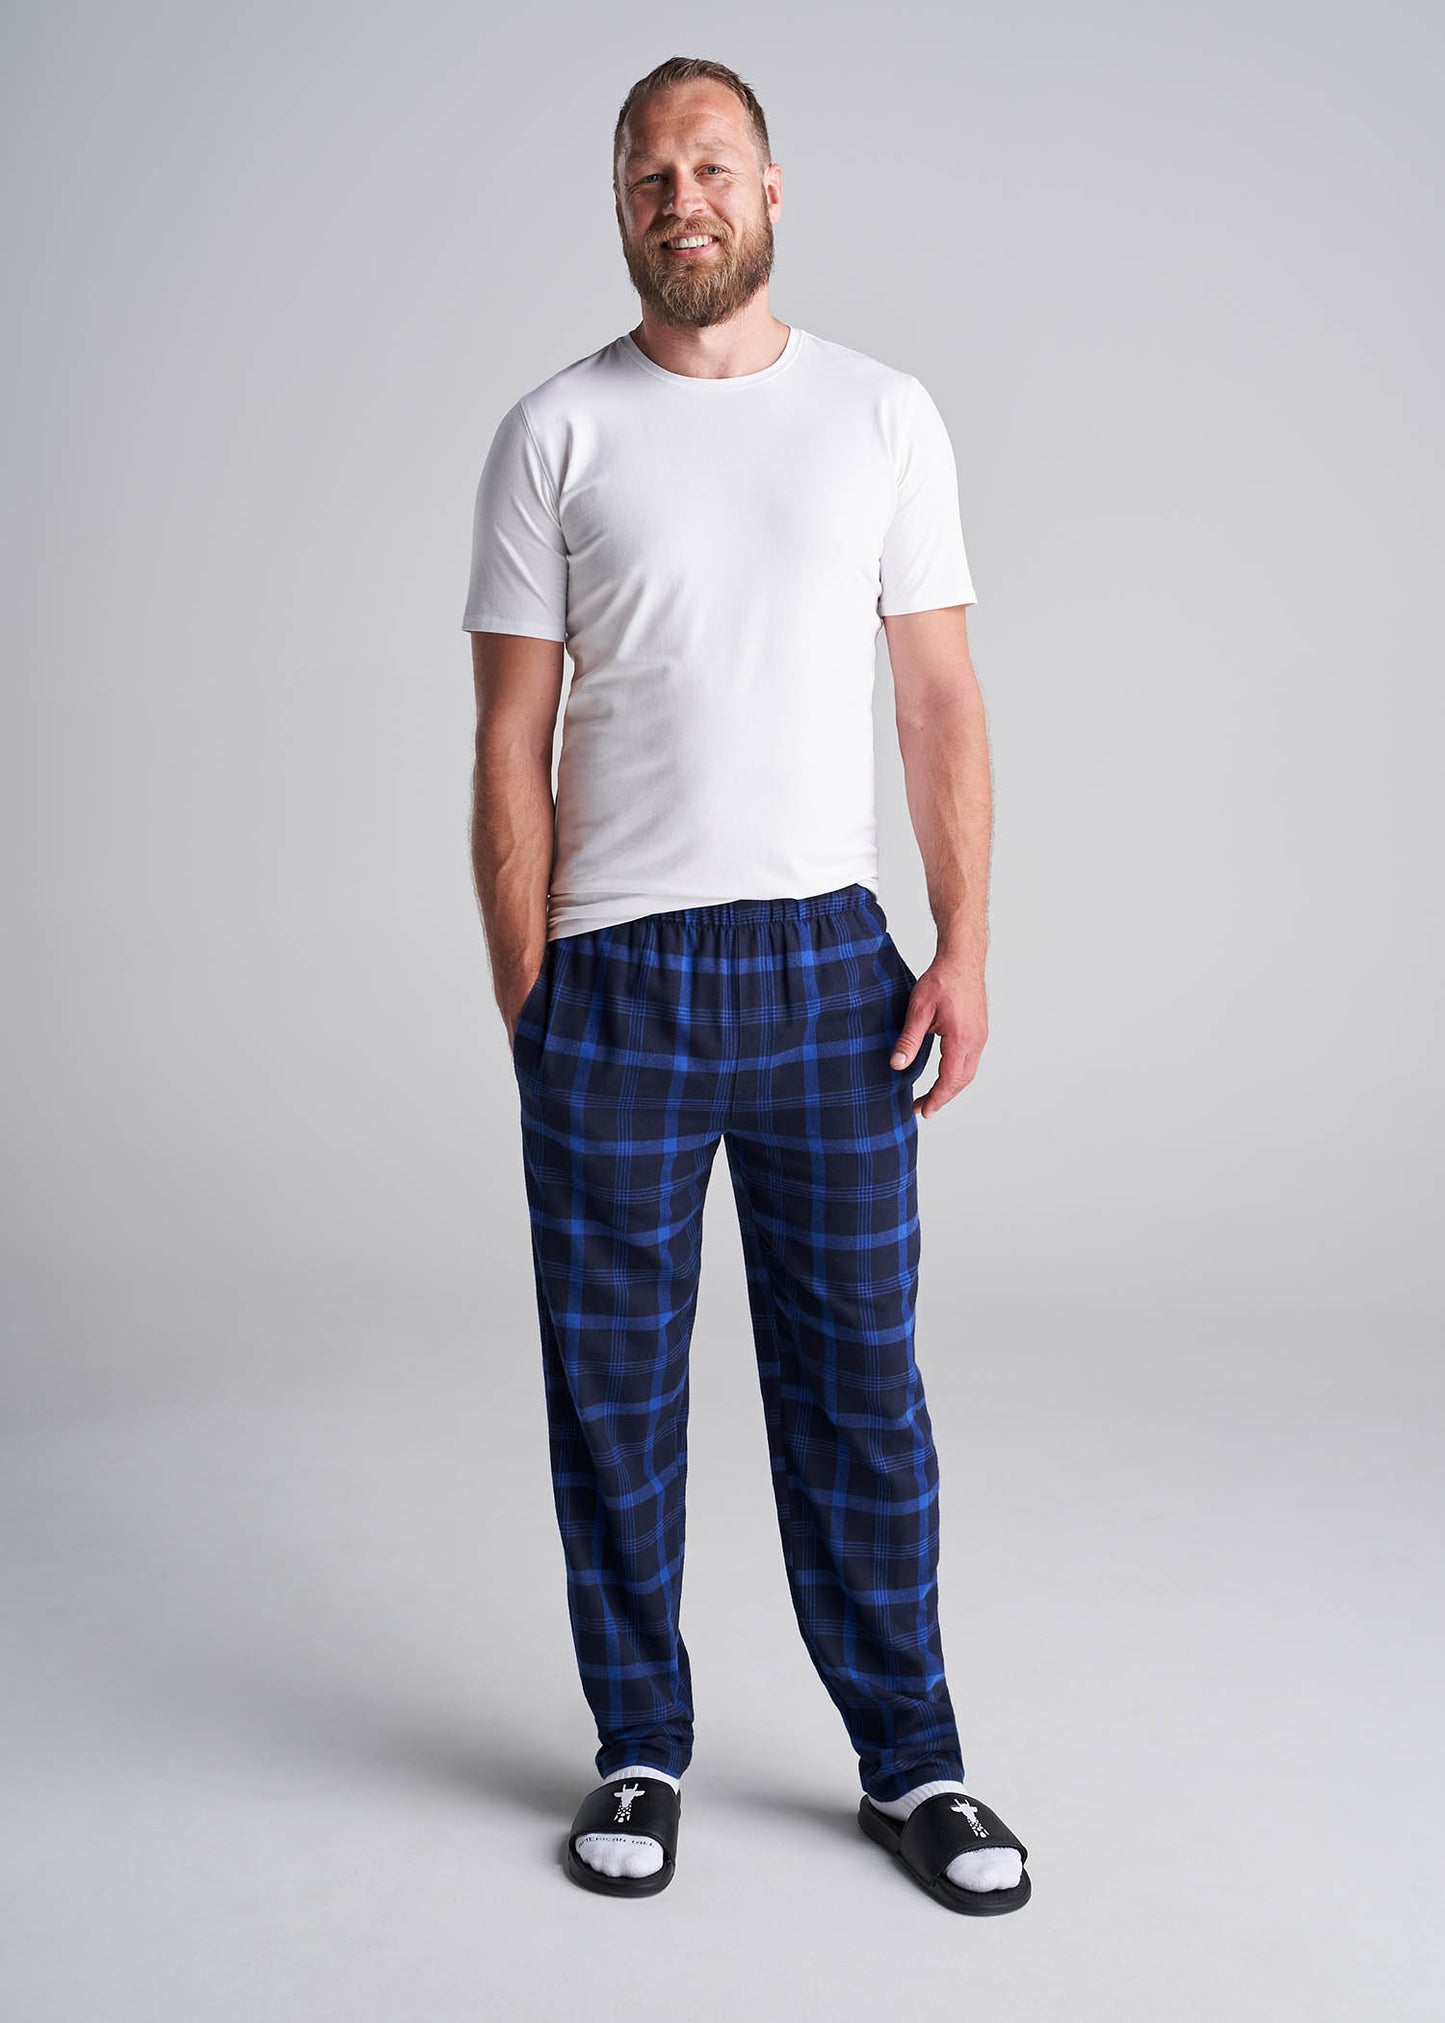 v]American_Tall_Men_Pajamas_Navy_True_Blue-full